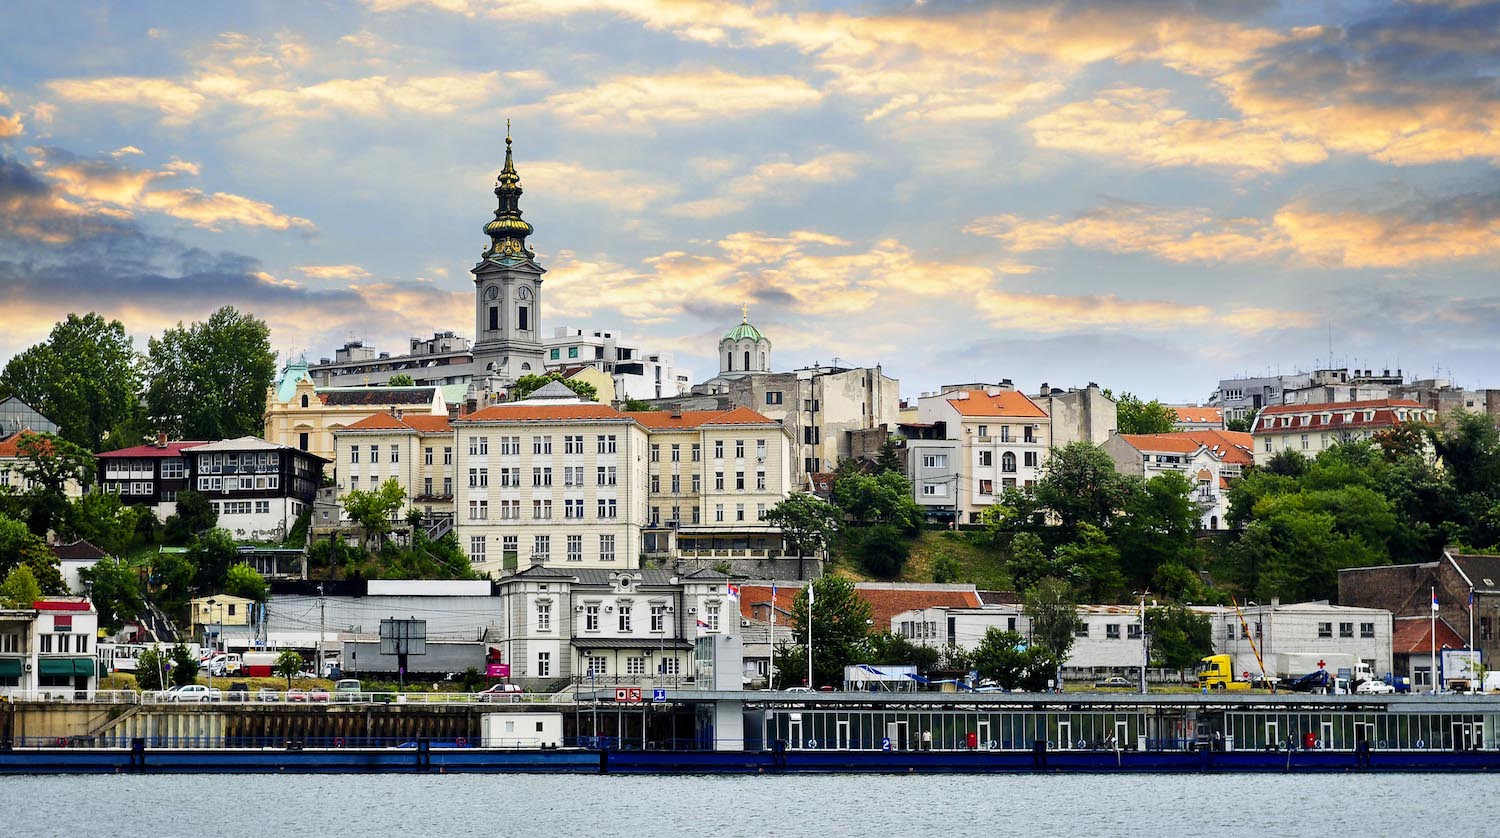 WordCamp Europe 2018 to be Held in Belgrade, Serbia, June 14-16